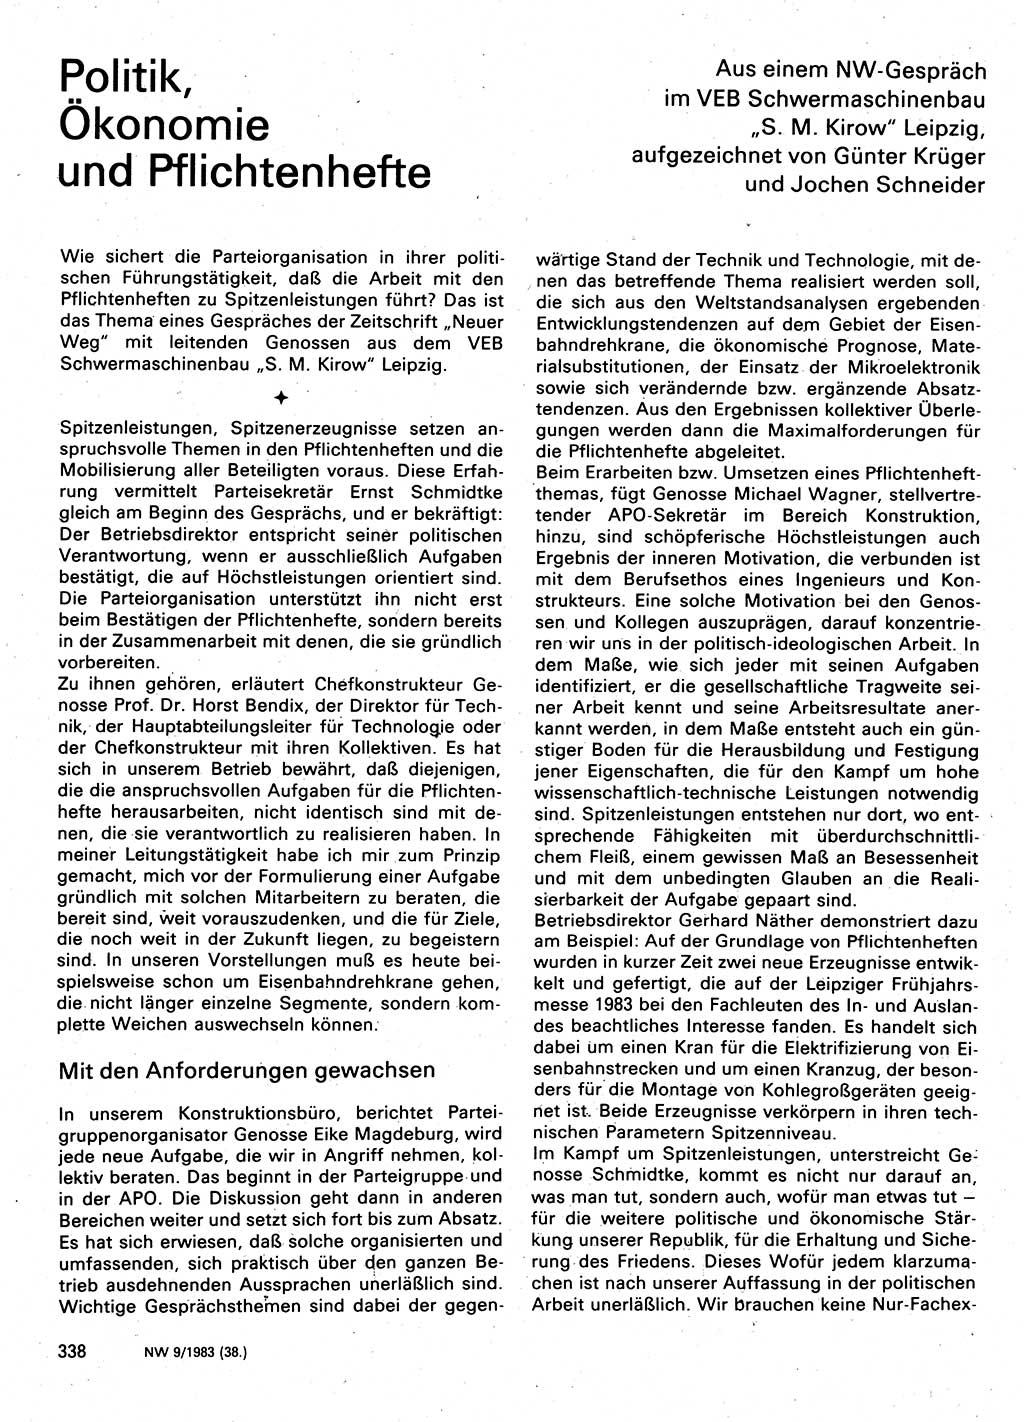 Neuer Weg (NW), Organ des Zentralkomitees (ZK) der SED (Sozialistische Einheitspartei Deutschlands) für Fragen des Parteilebens, 38. Jahrgang [Deutsche Demokratische Republik (DDR)] 1983, Seite 338 (NW ZK SED DDR 1983, S. 338)